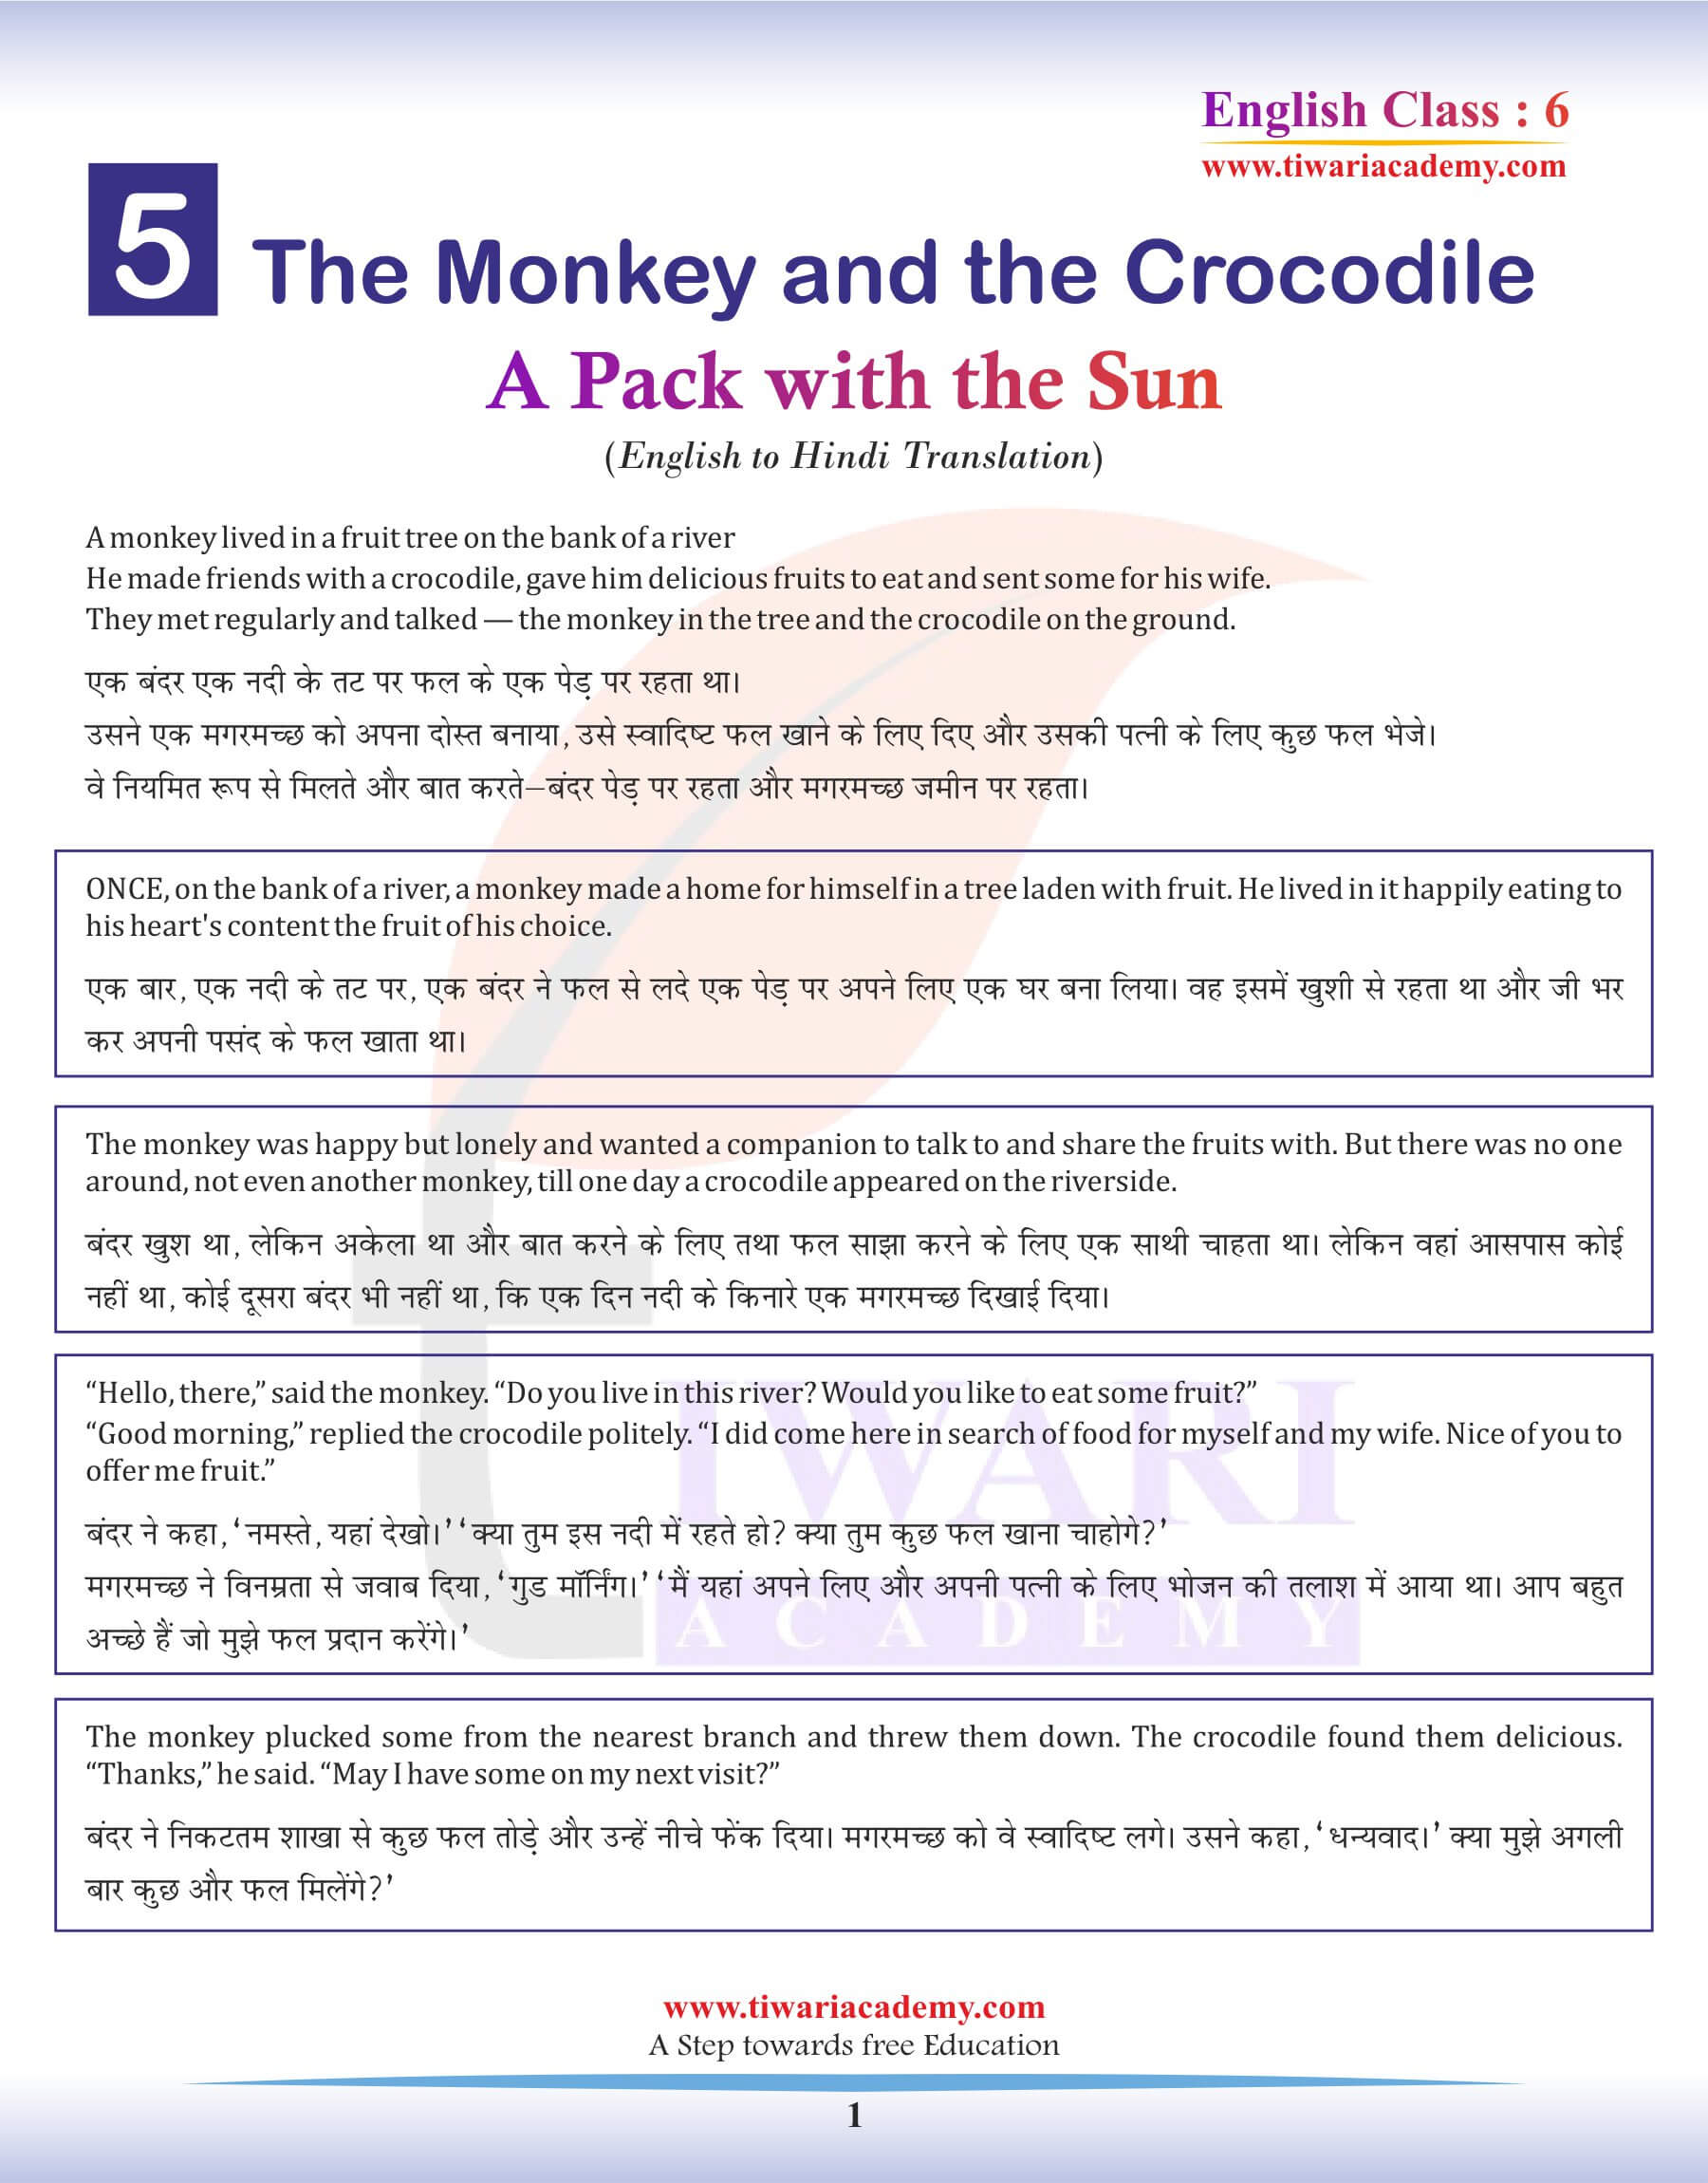 Class 6 English Chapter 5 Hindi Translation